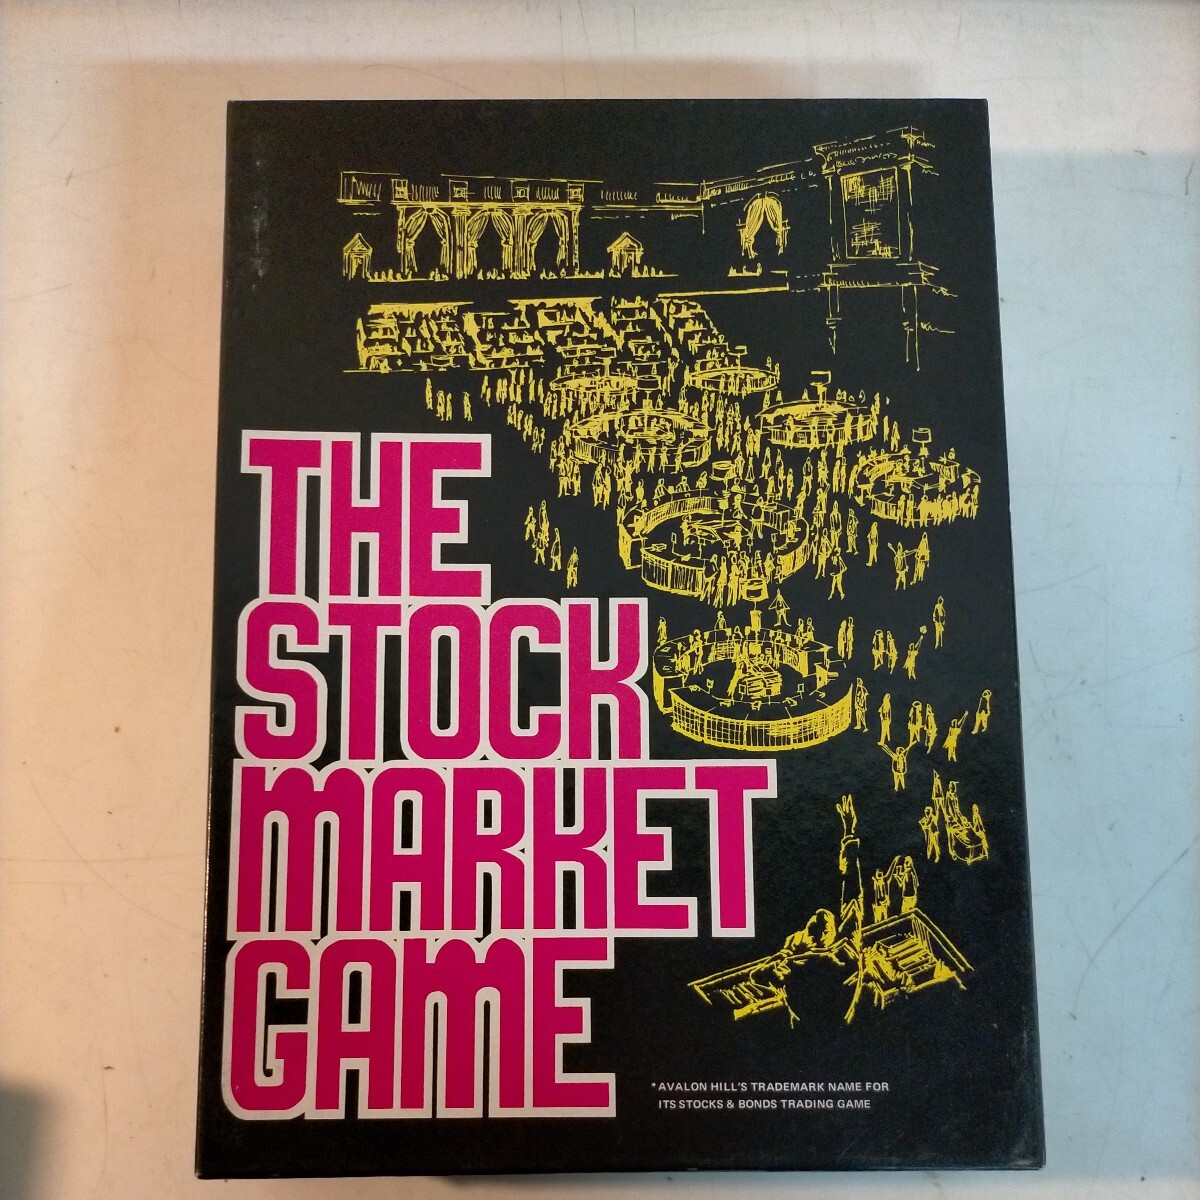 THE STOCK MARKET GAME ストックマーケットゲーム アバロンヒル 株式市場◇中古/未清掃未検品/現状渡し/写真でご確認ください/NCNRの画像1